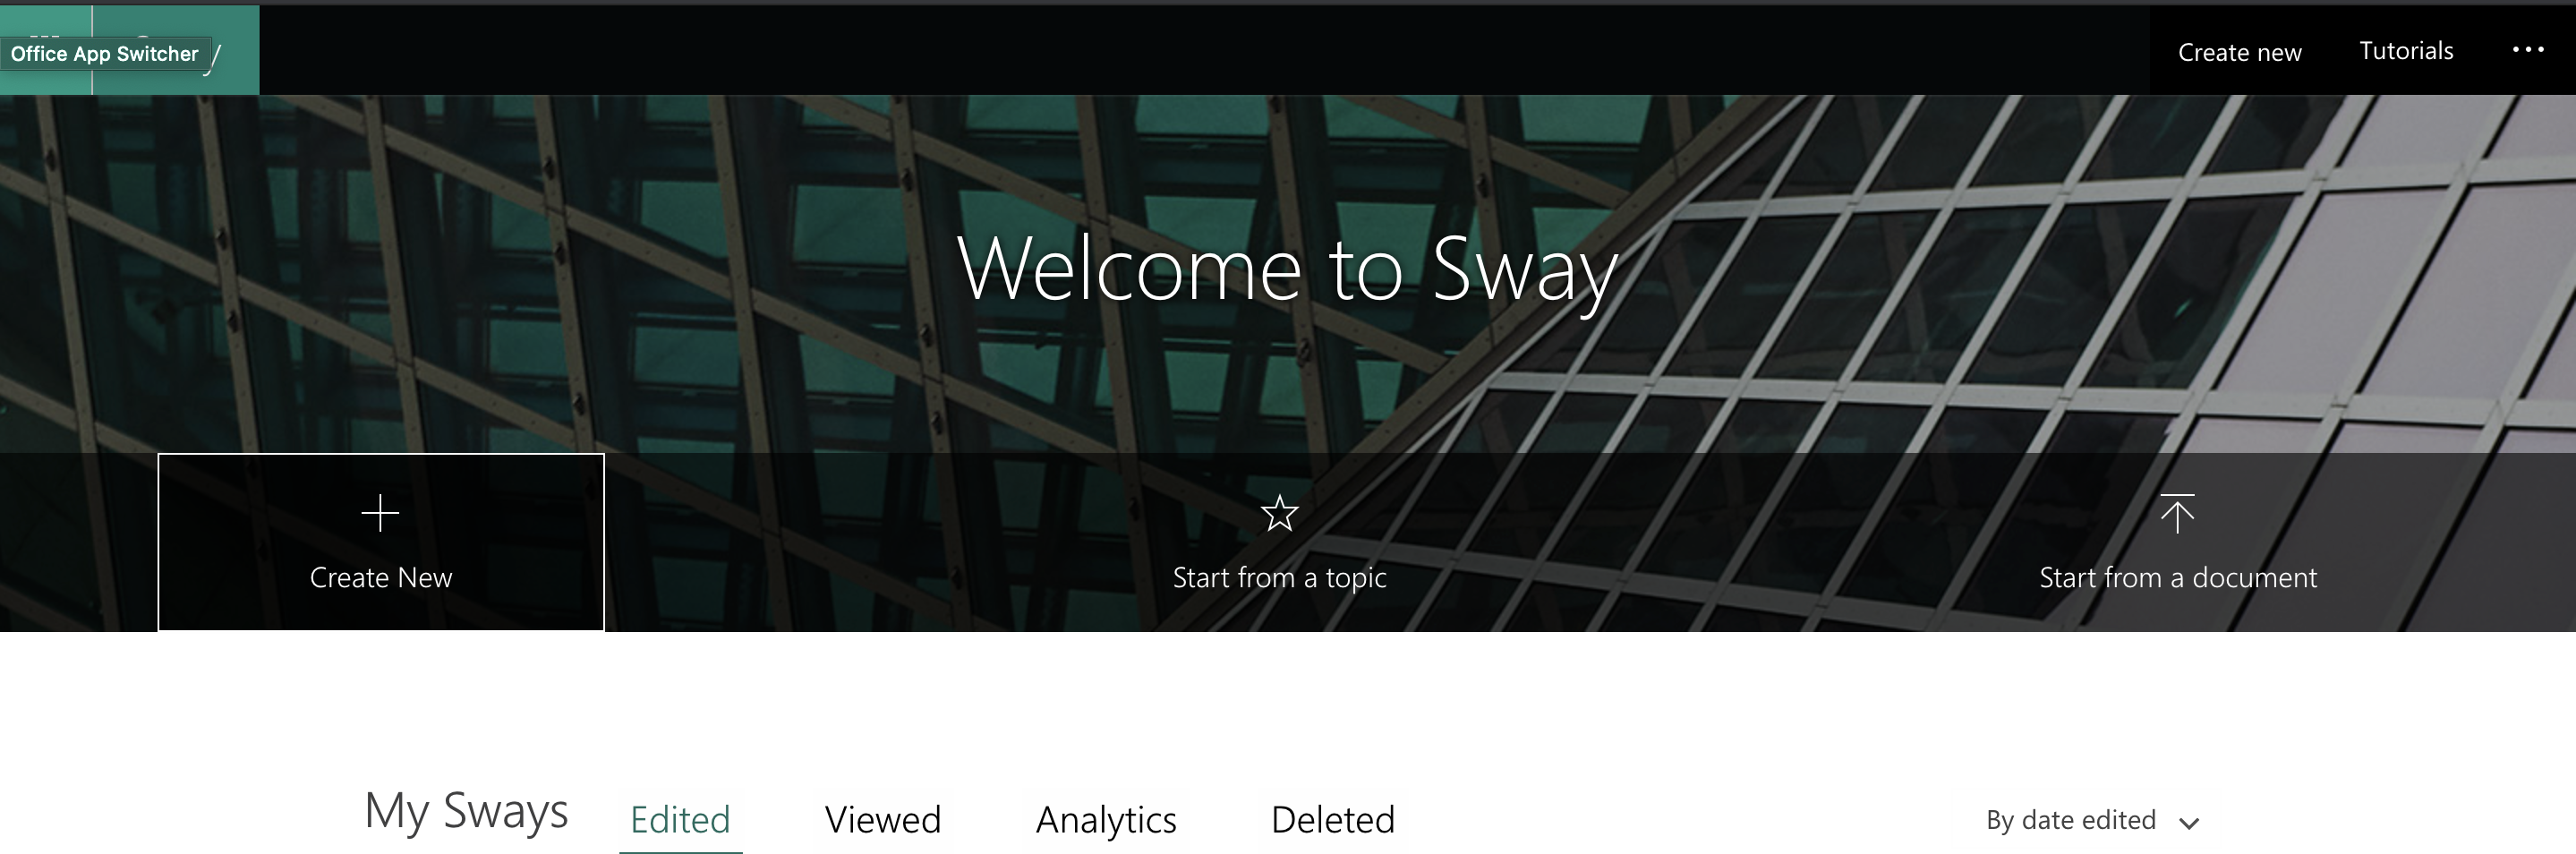 Sway Homepage